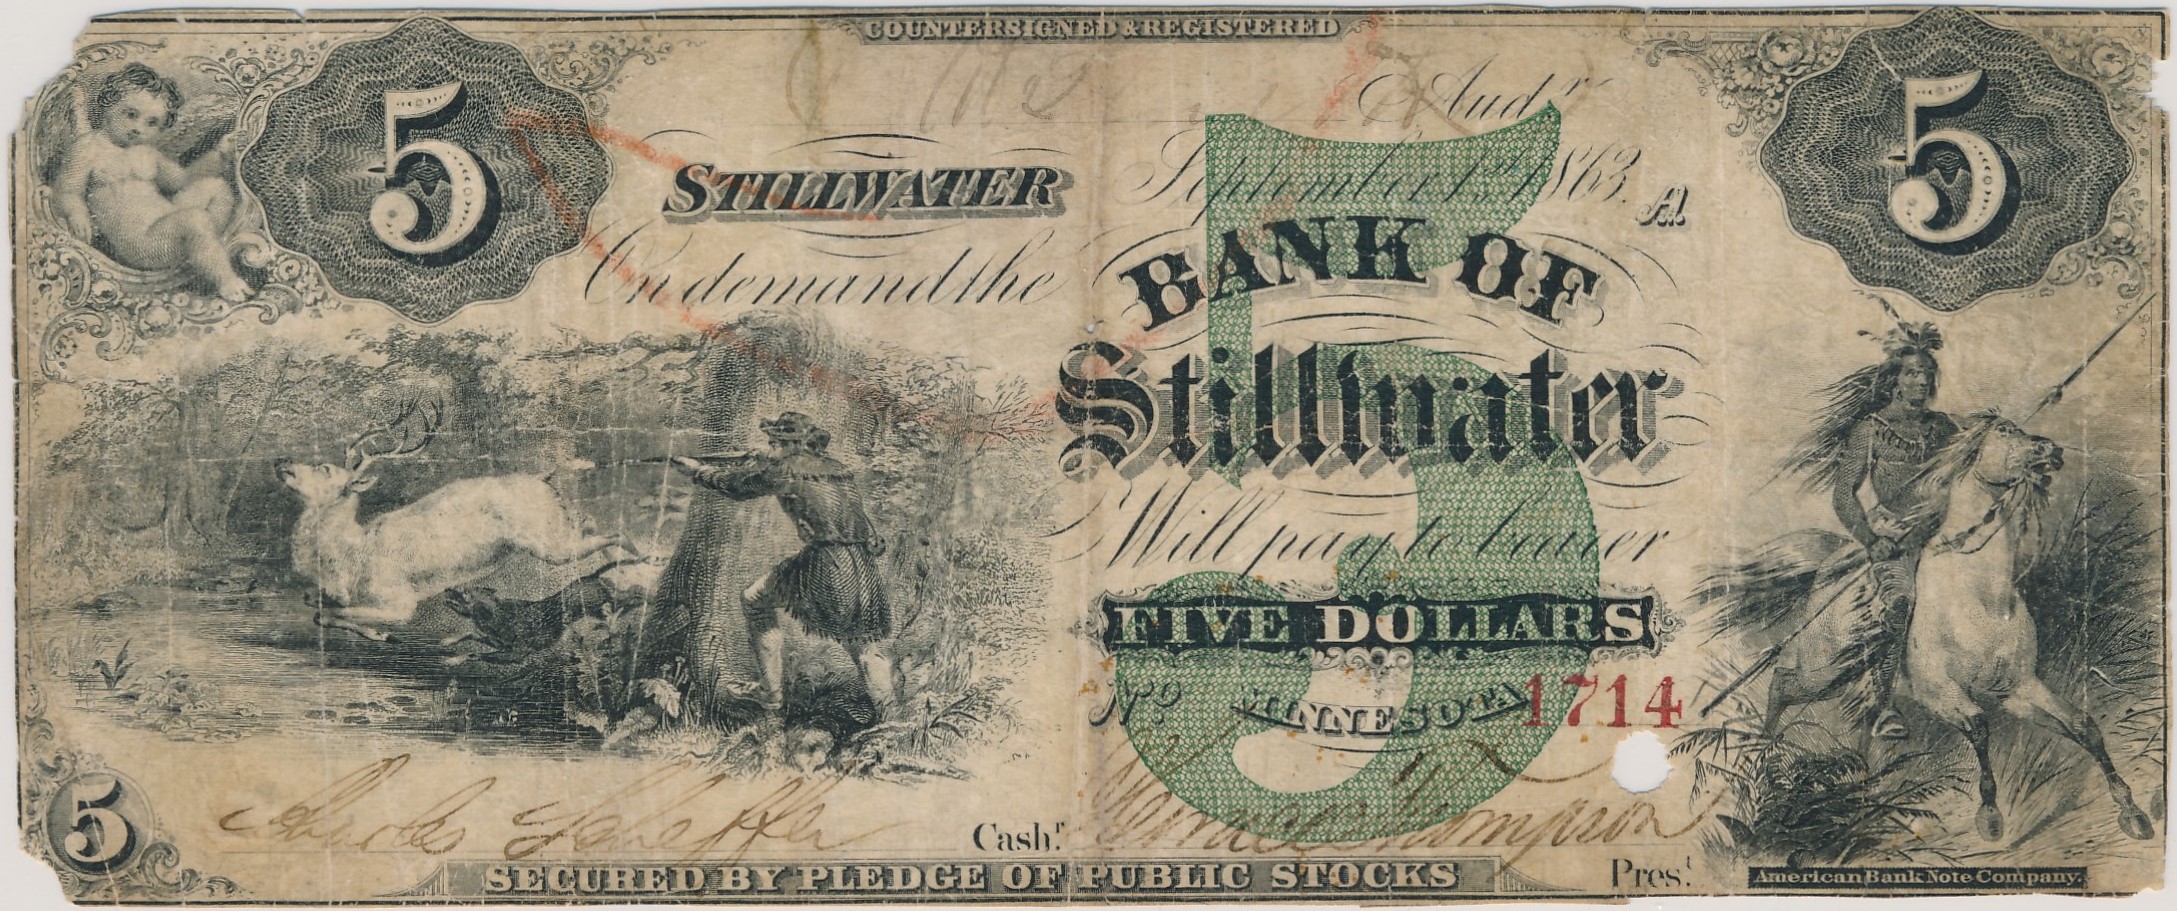 $5 Bank of Stillwater